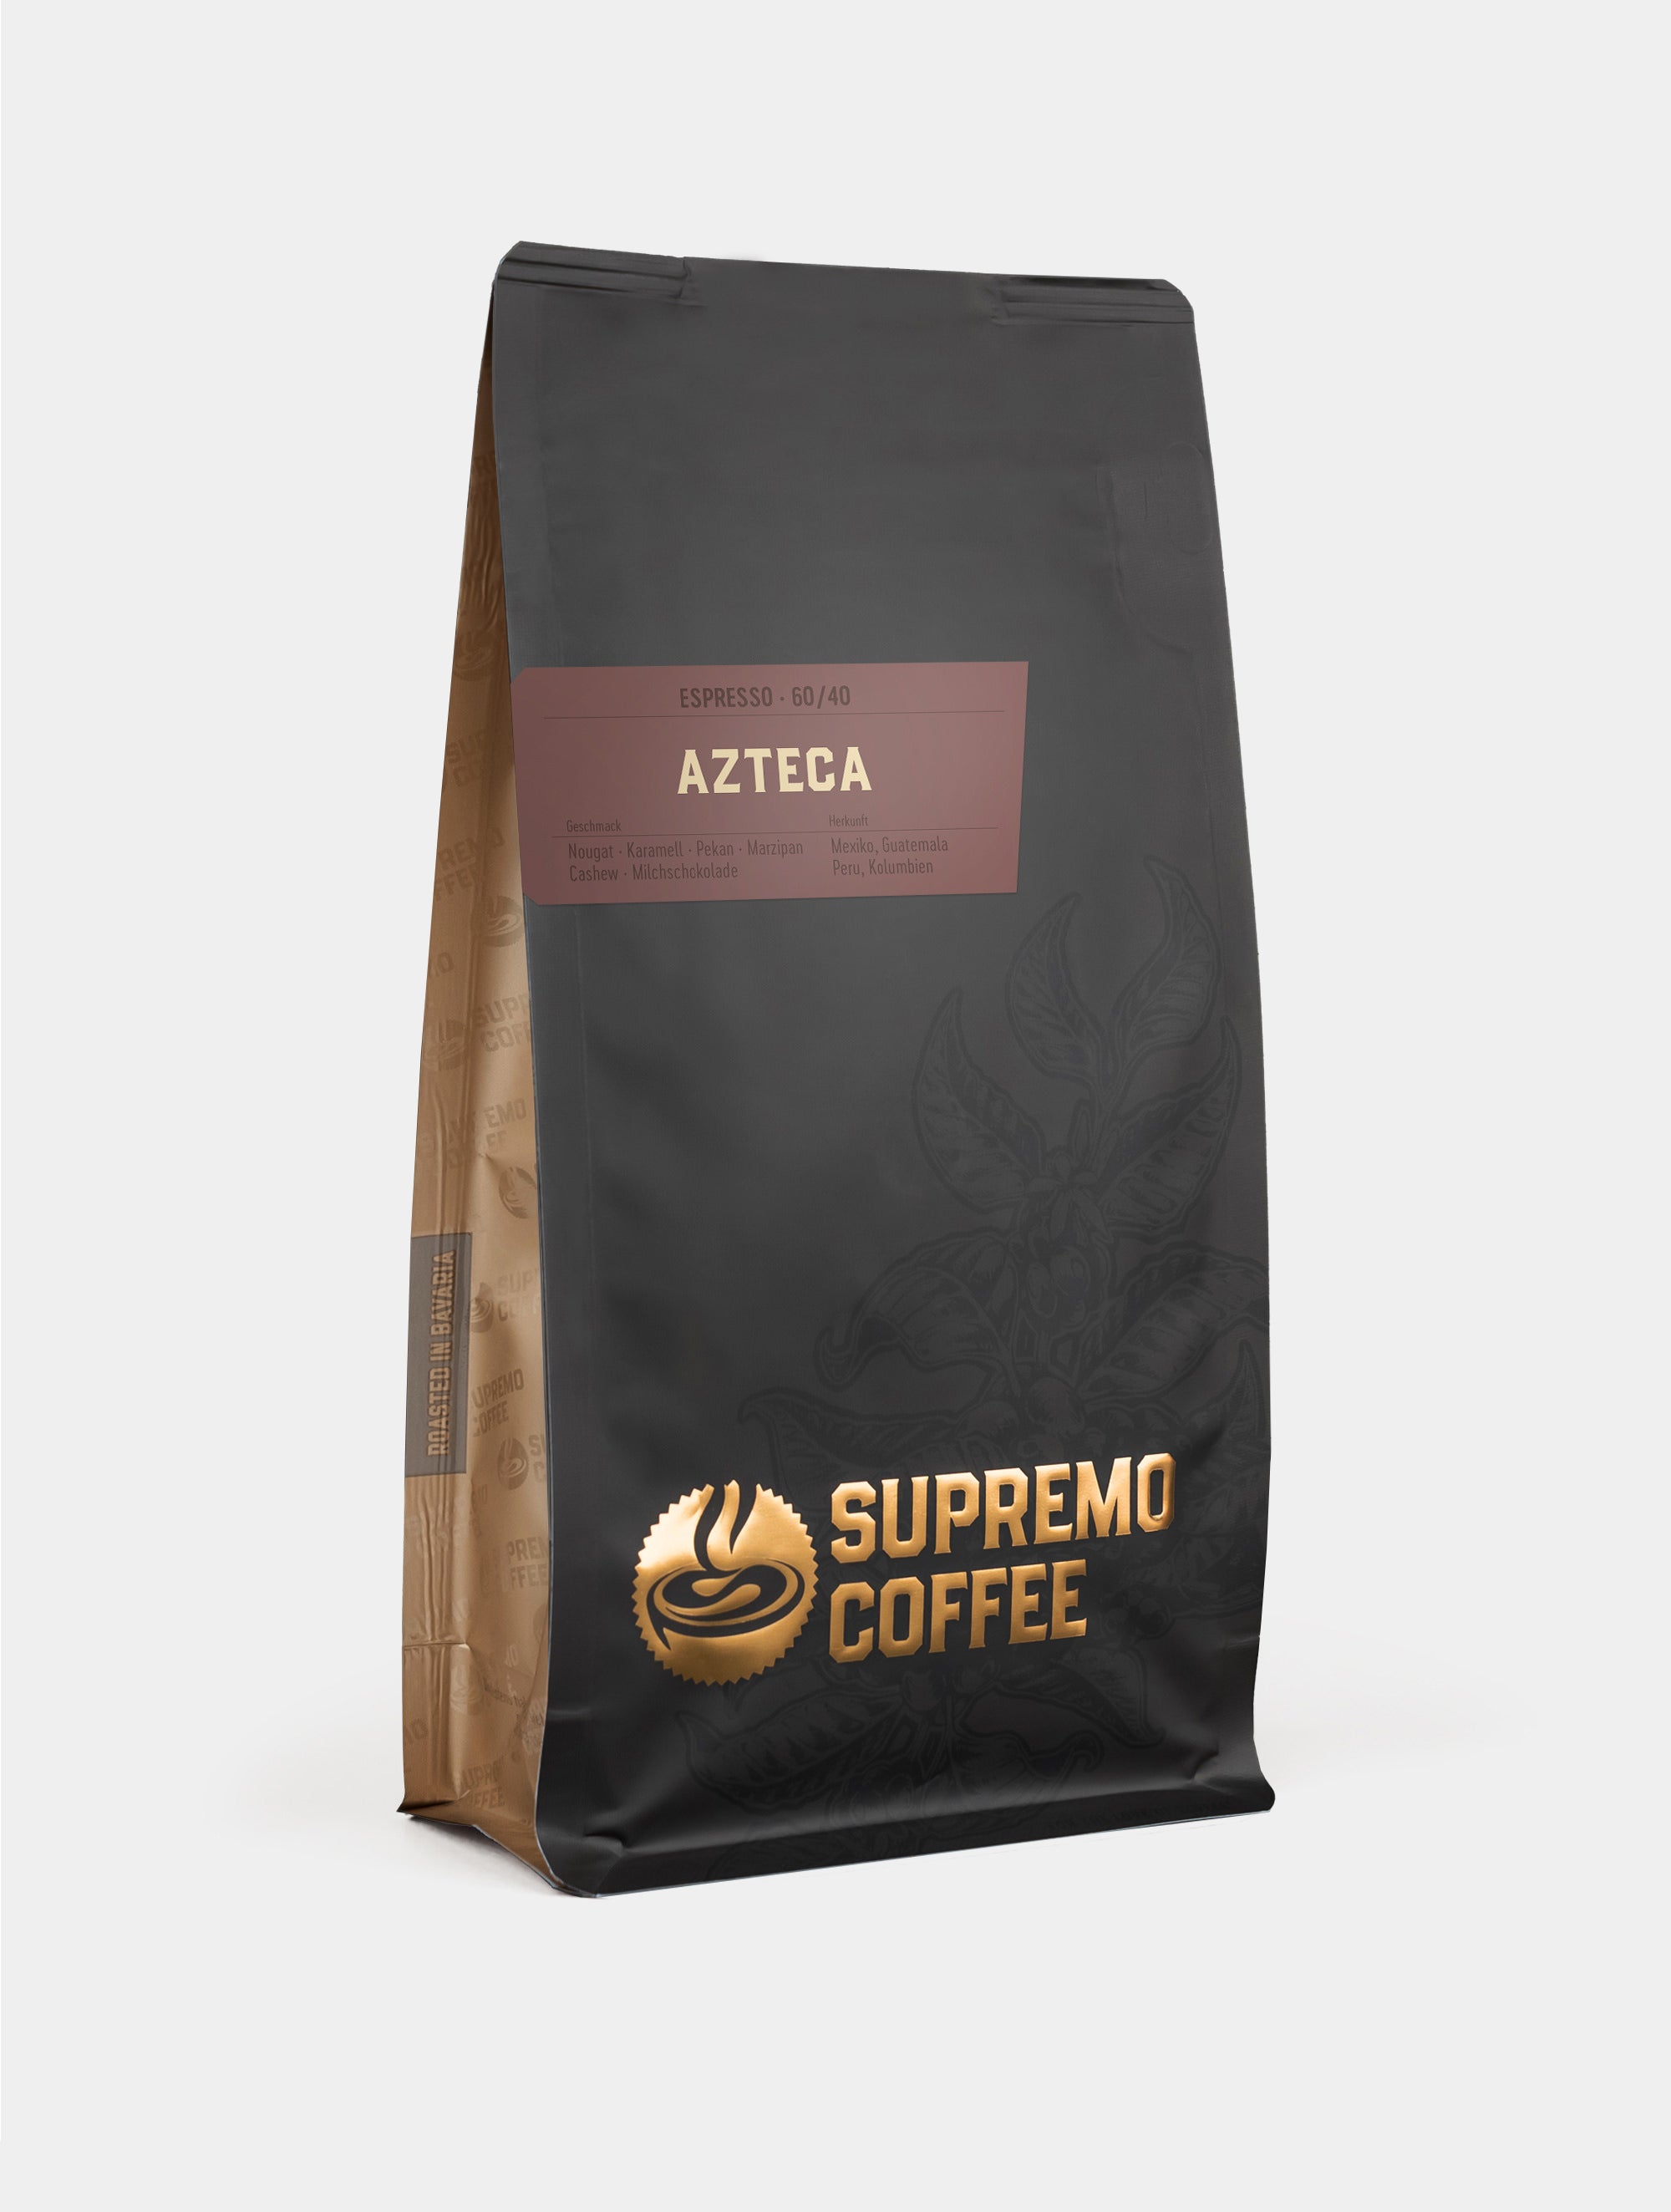 Azteca, Espresso 60/40 | SUPREMO Coffee